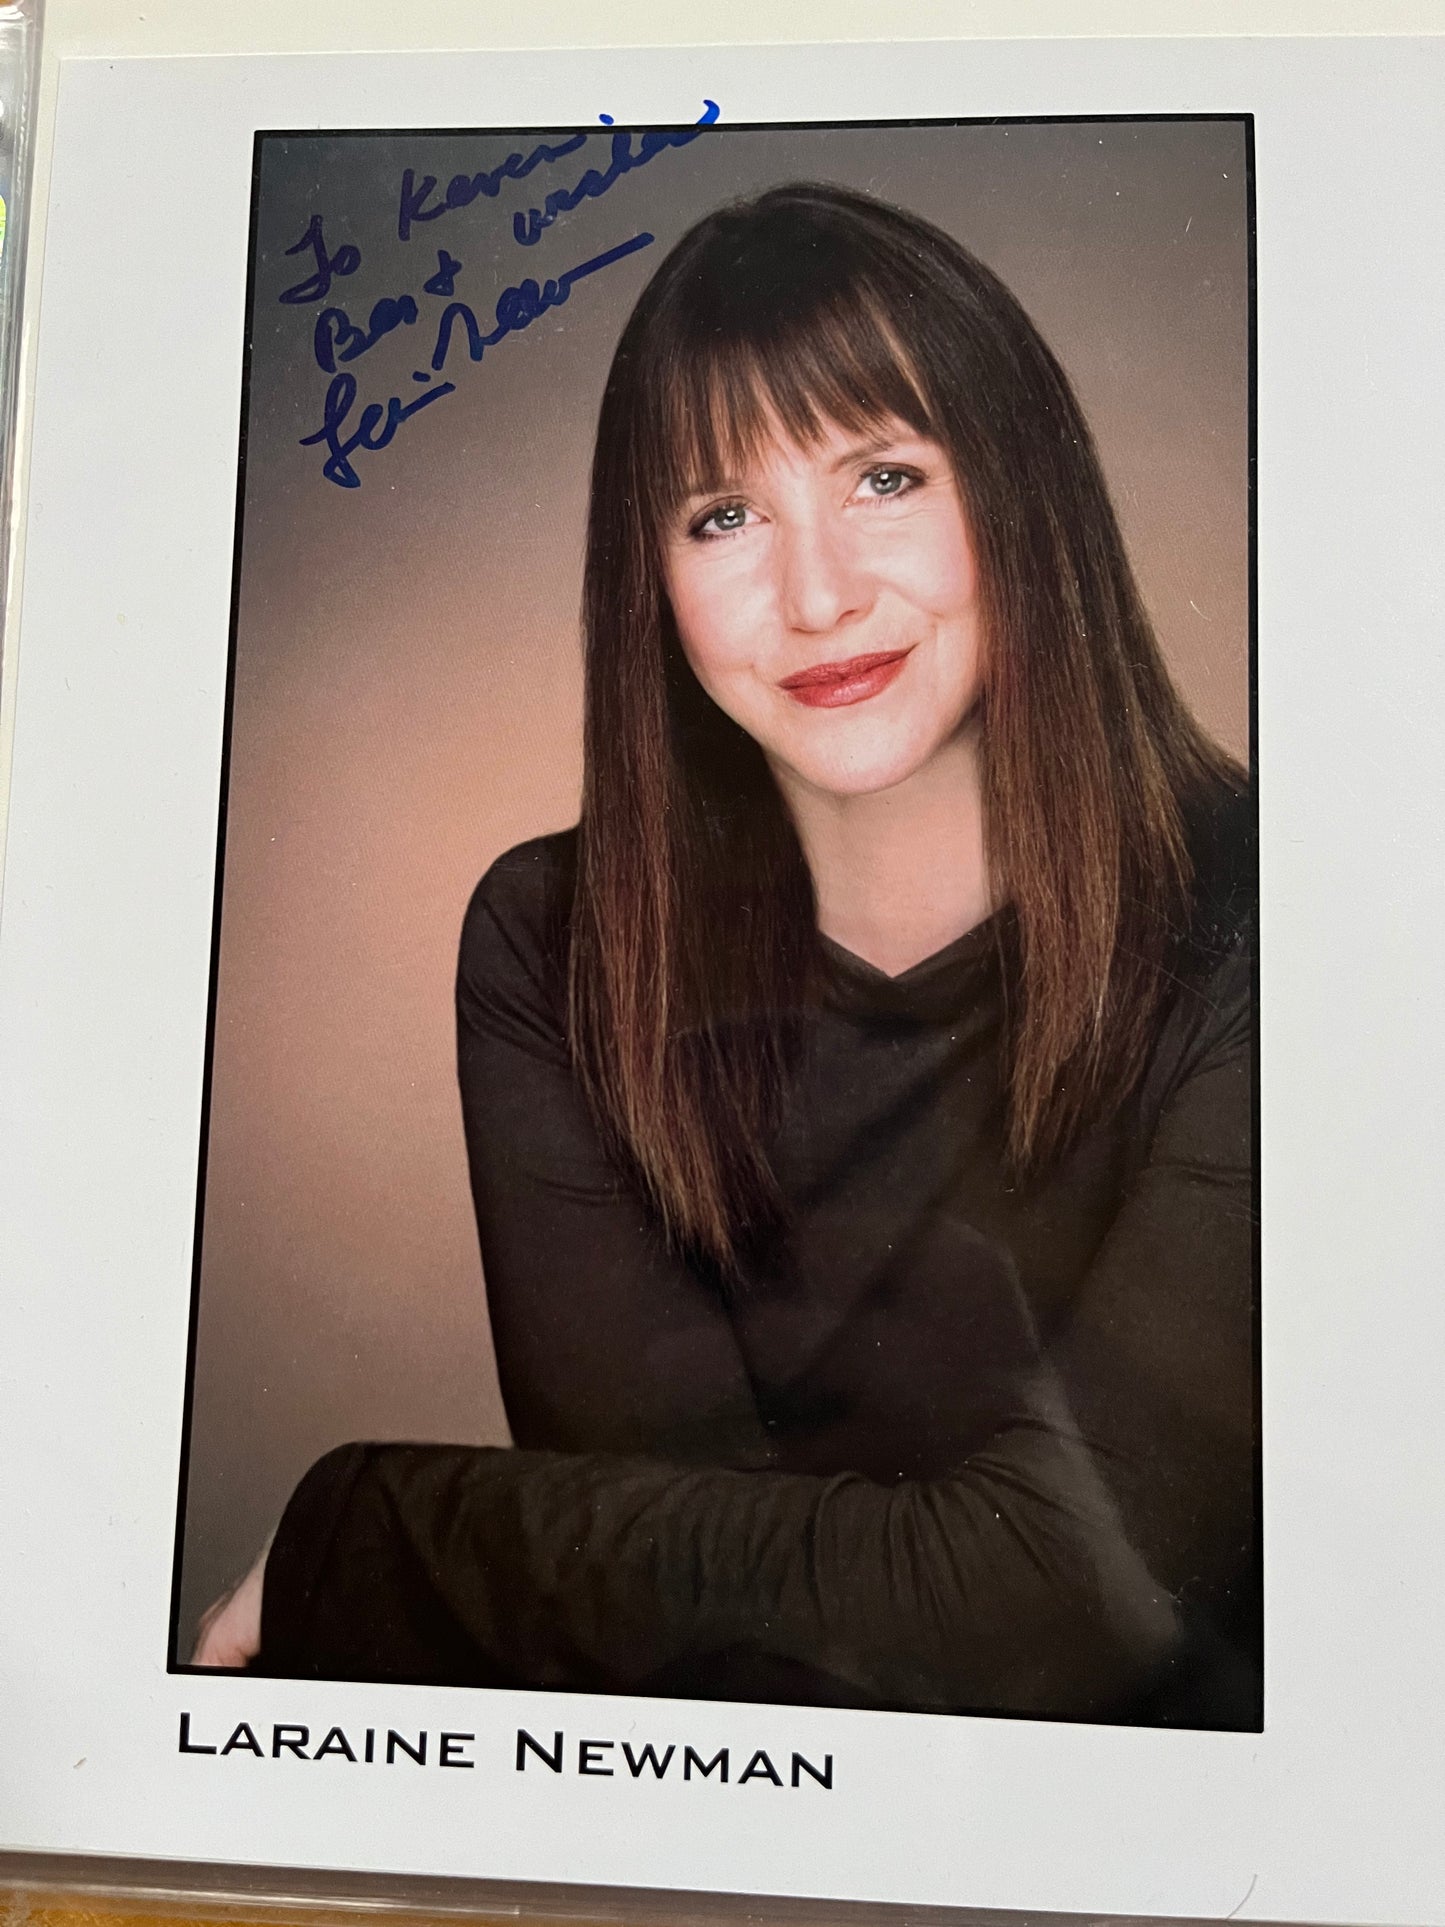 LARAINE NEWMAN, Saturday Night Live, Coneheads, autograph